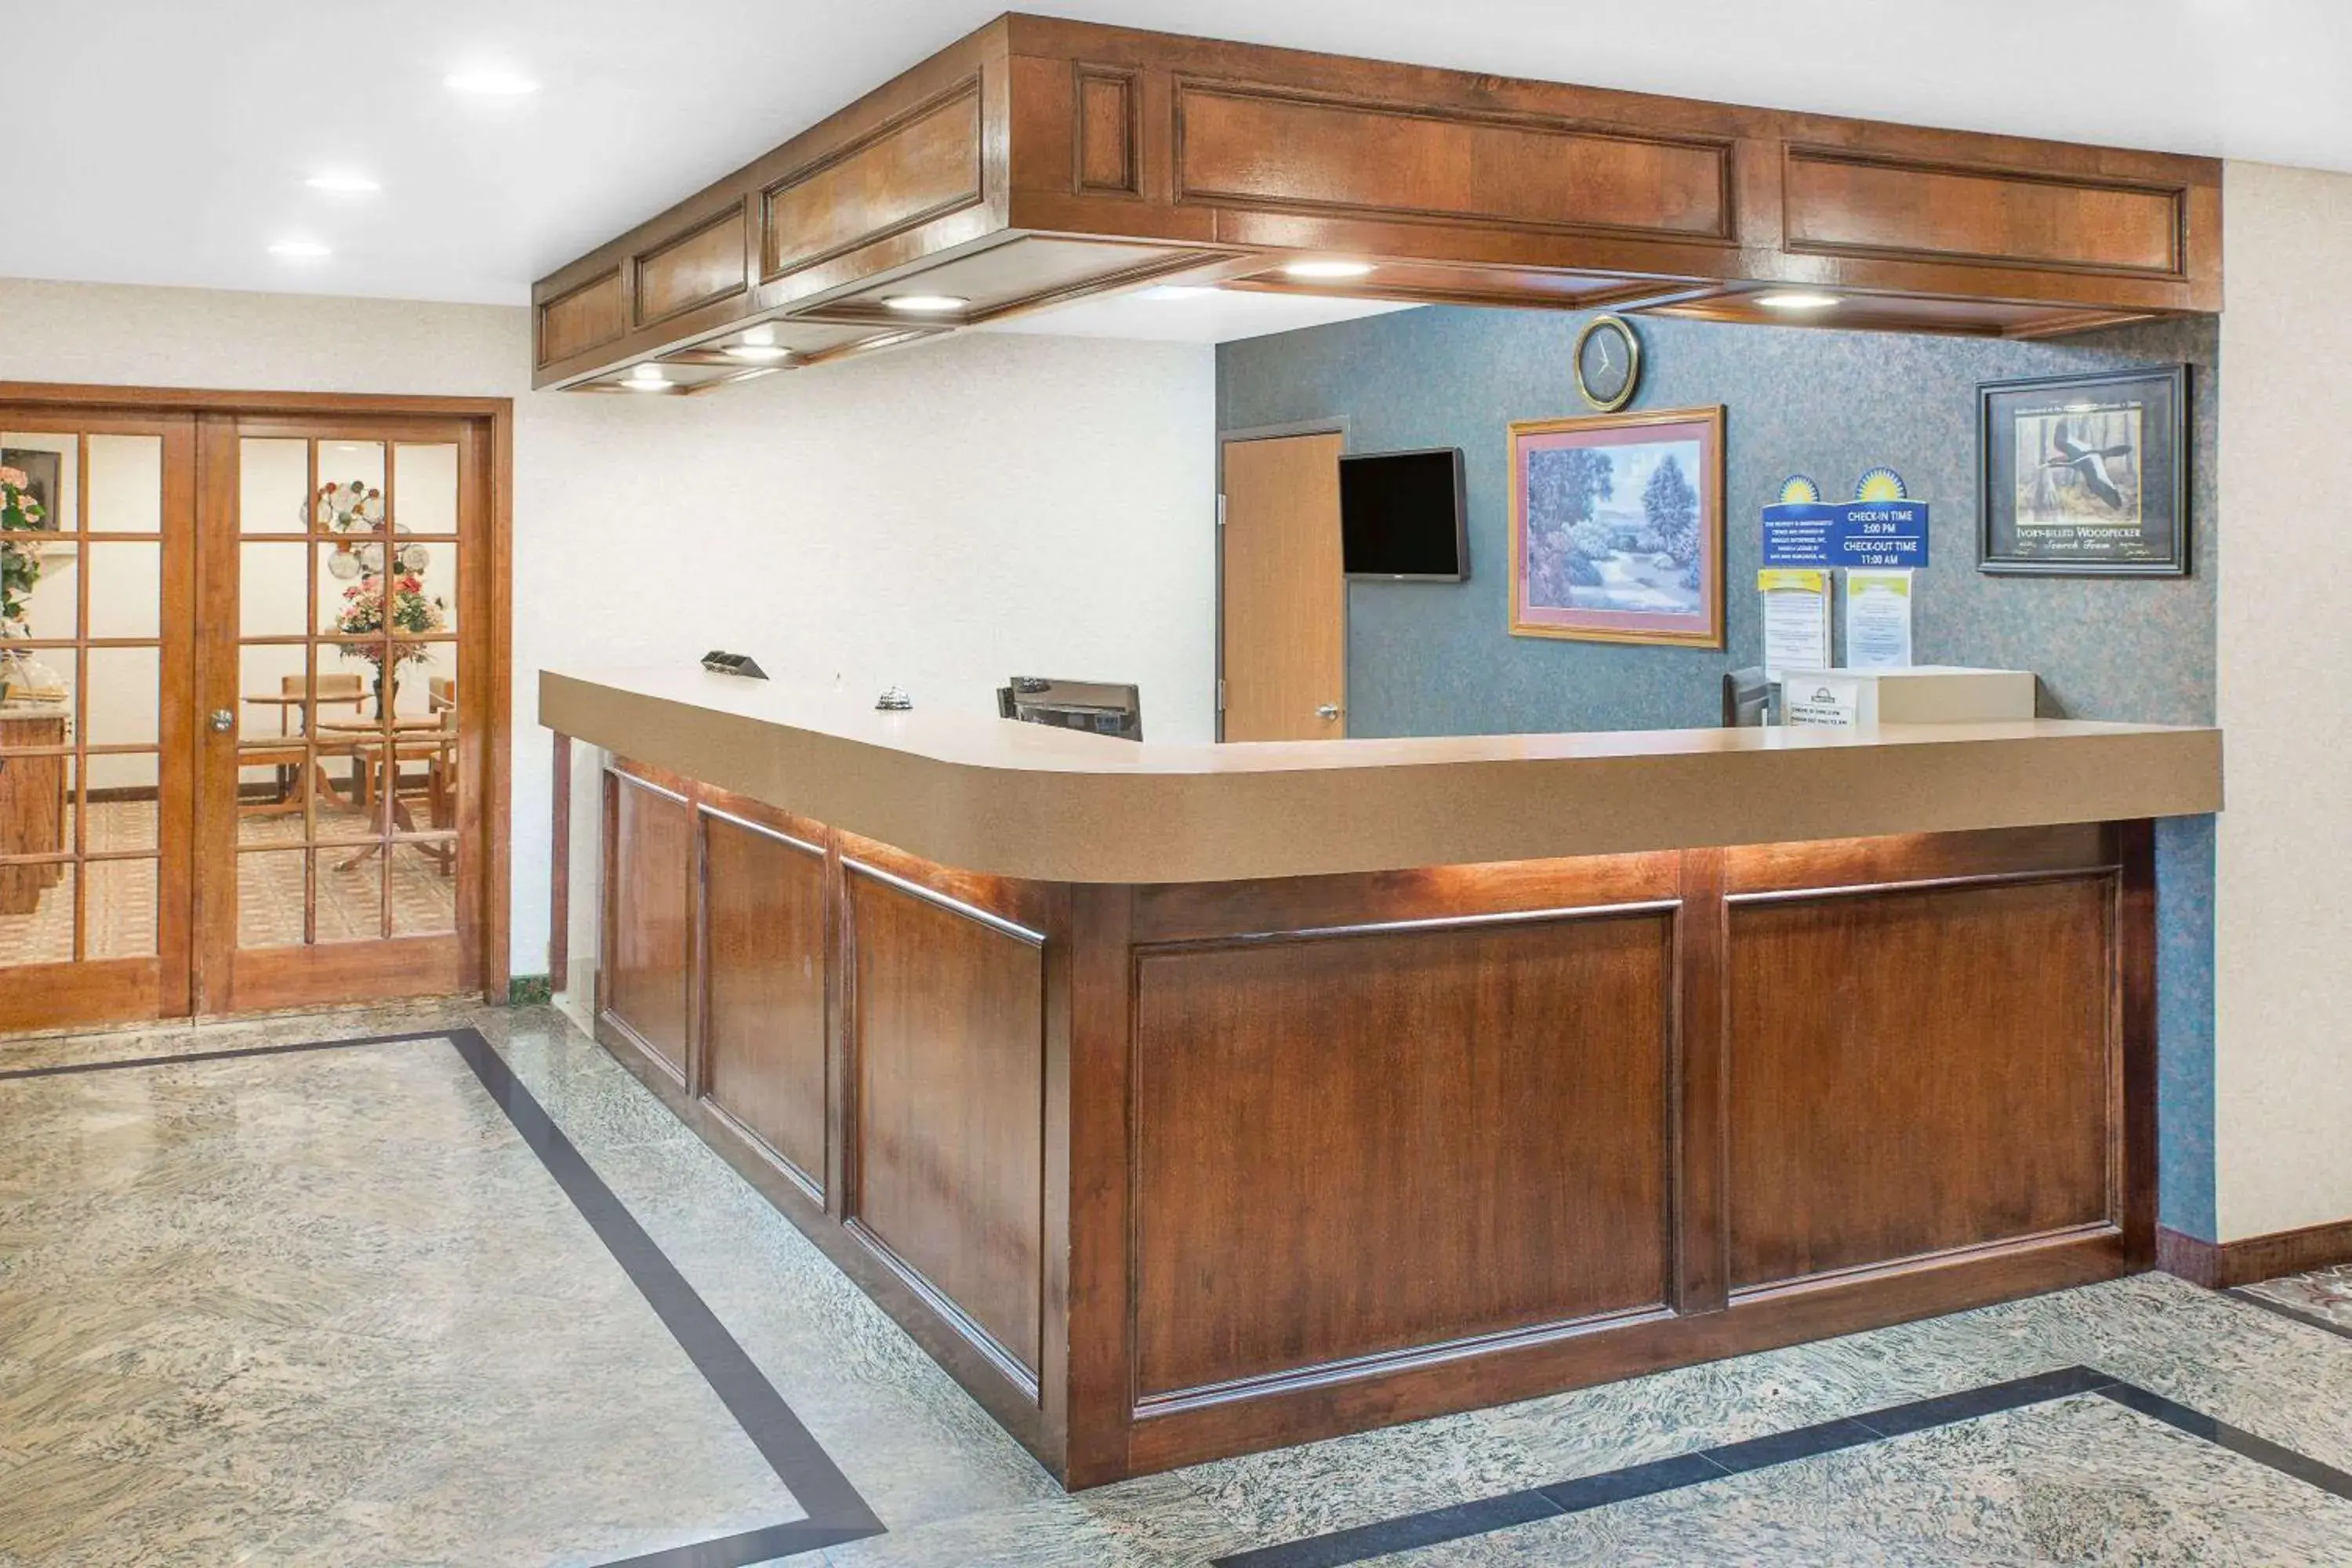 Lobby or reception, Lobby/Reception in Days Inn & Suites by Wyndham Brinkley